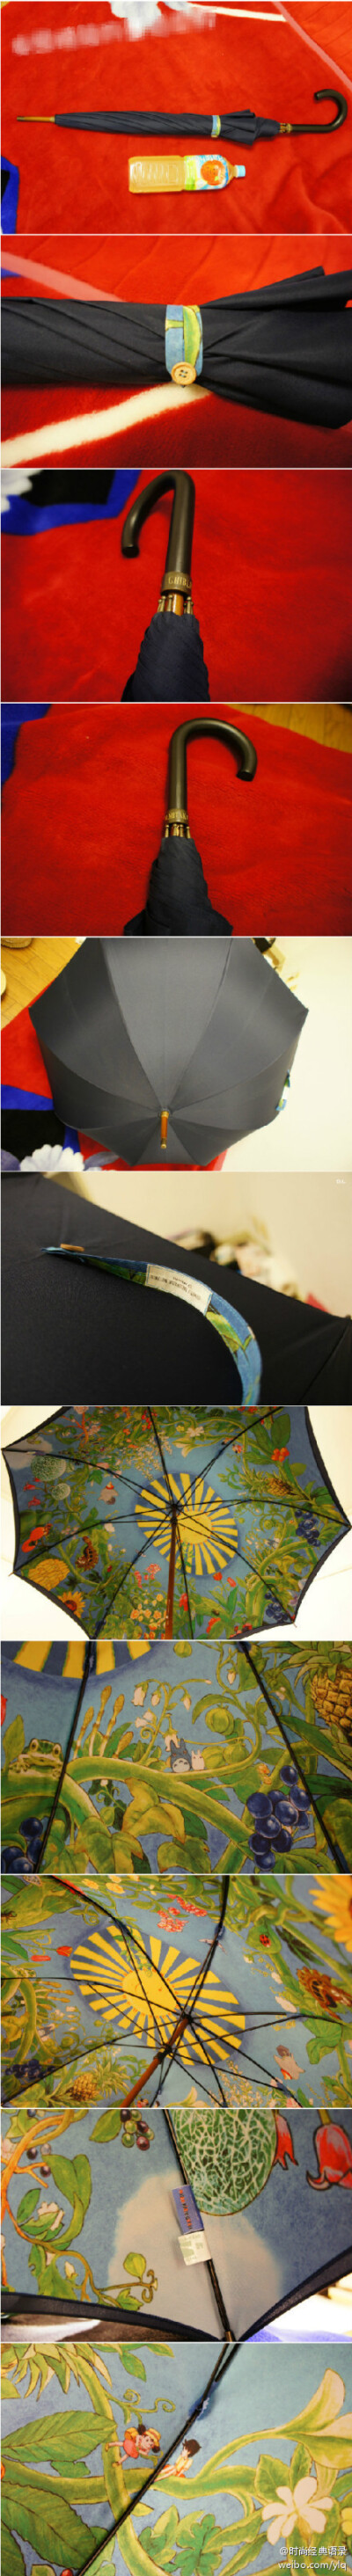 宫崎骏的吉卜力美术馆买的一把小黑伞，外表平淡无奇，但在撑起的那一刻，当时我就震惊了。